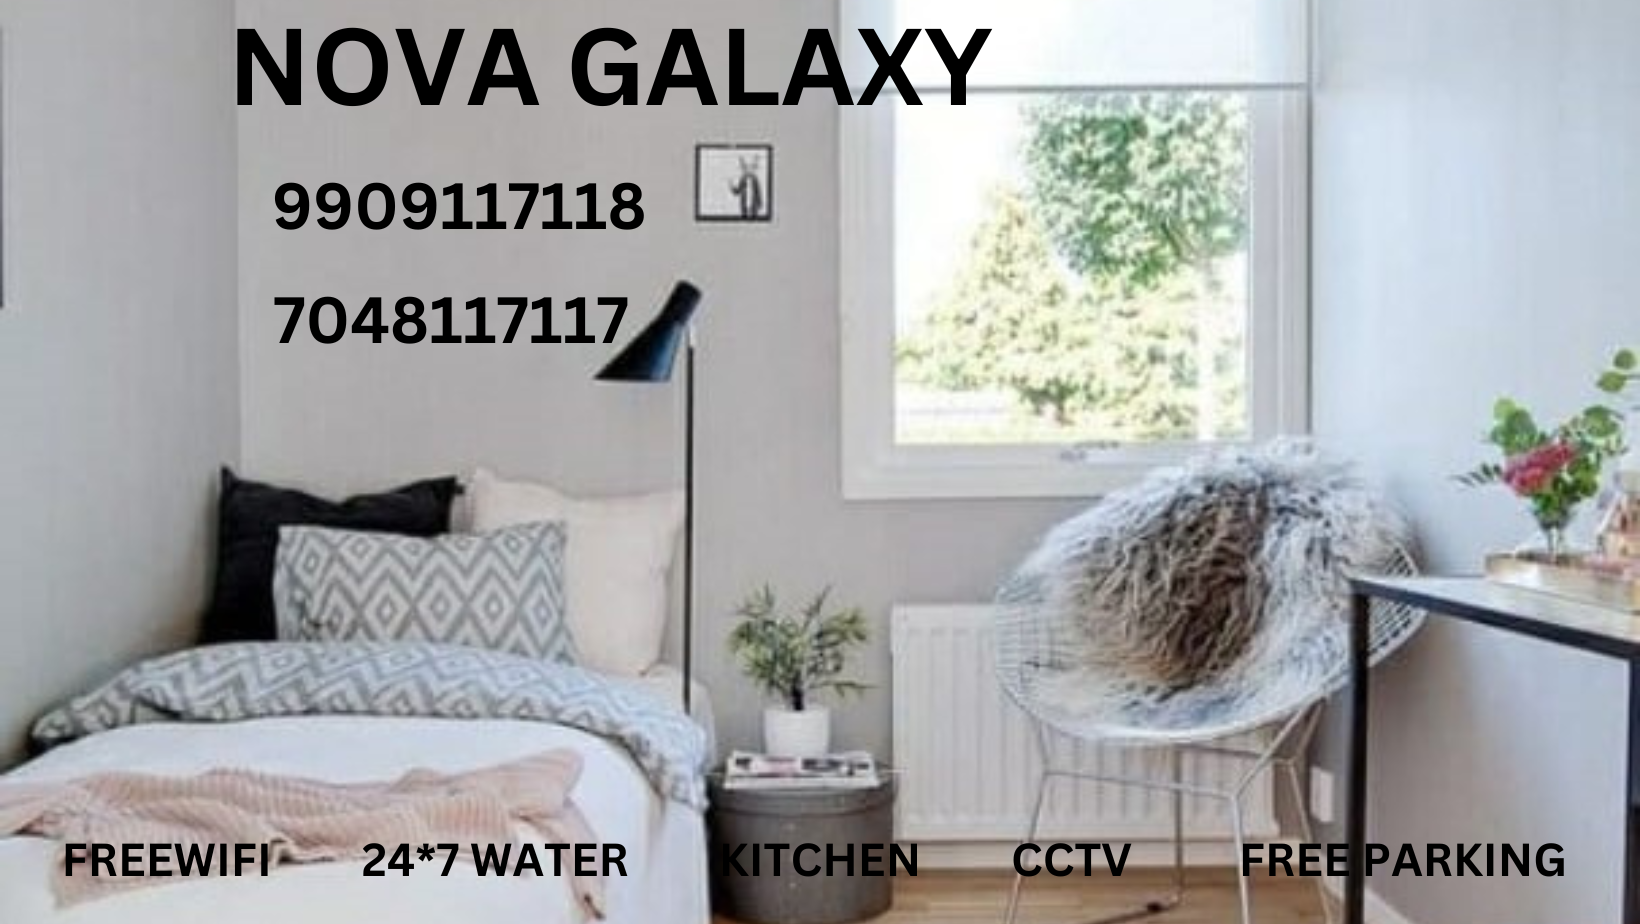 Nova Galaxy Pg Hostel - Rajkot